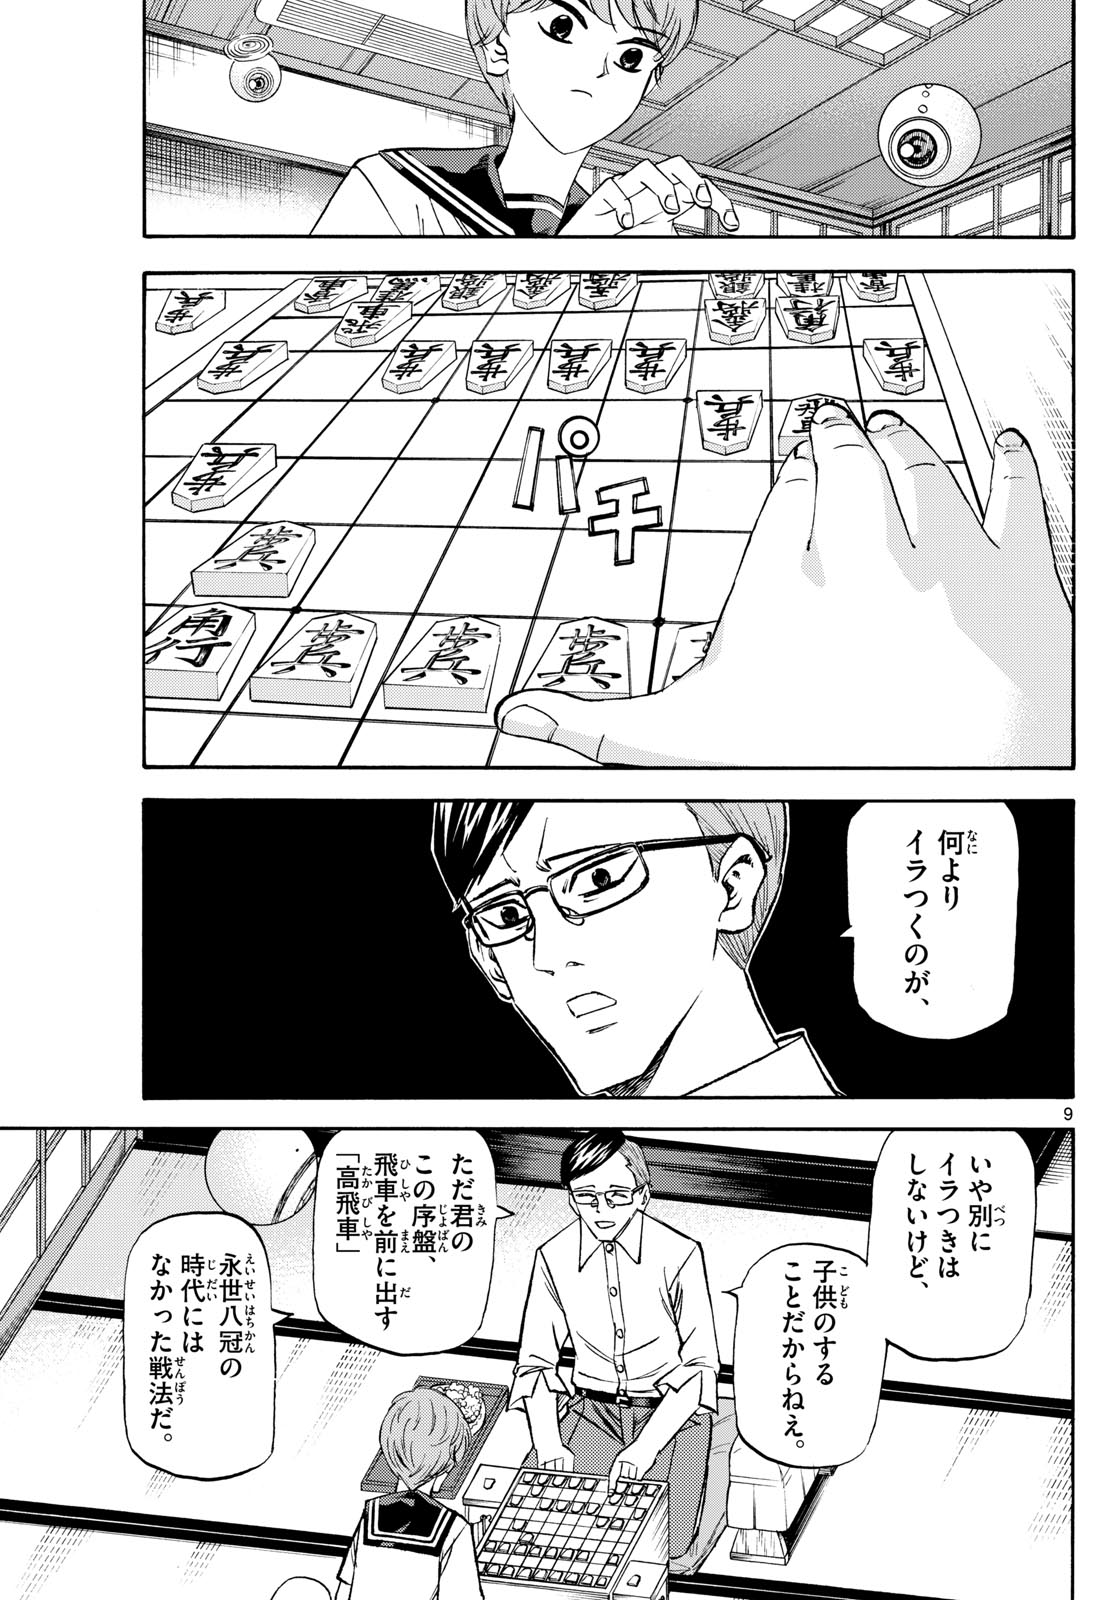 Tatsu to Ichigo - Chapter 196 - Page 9